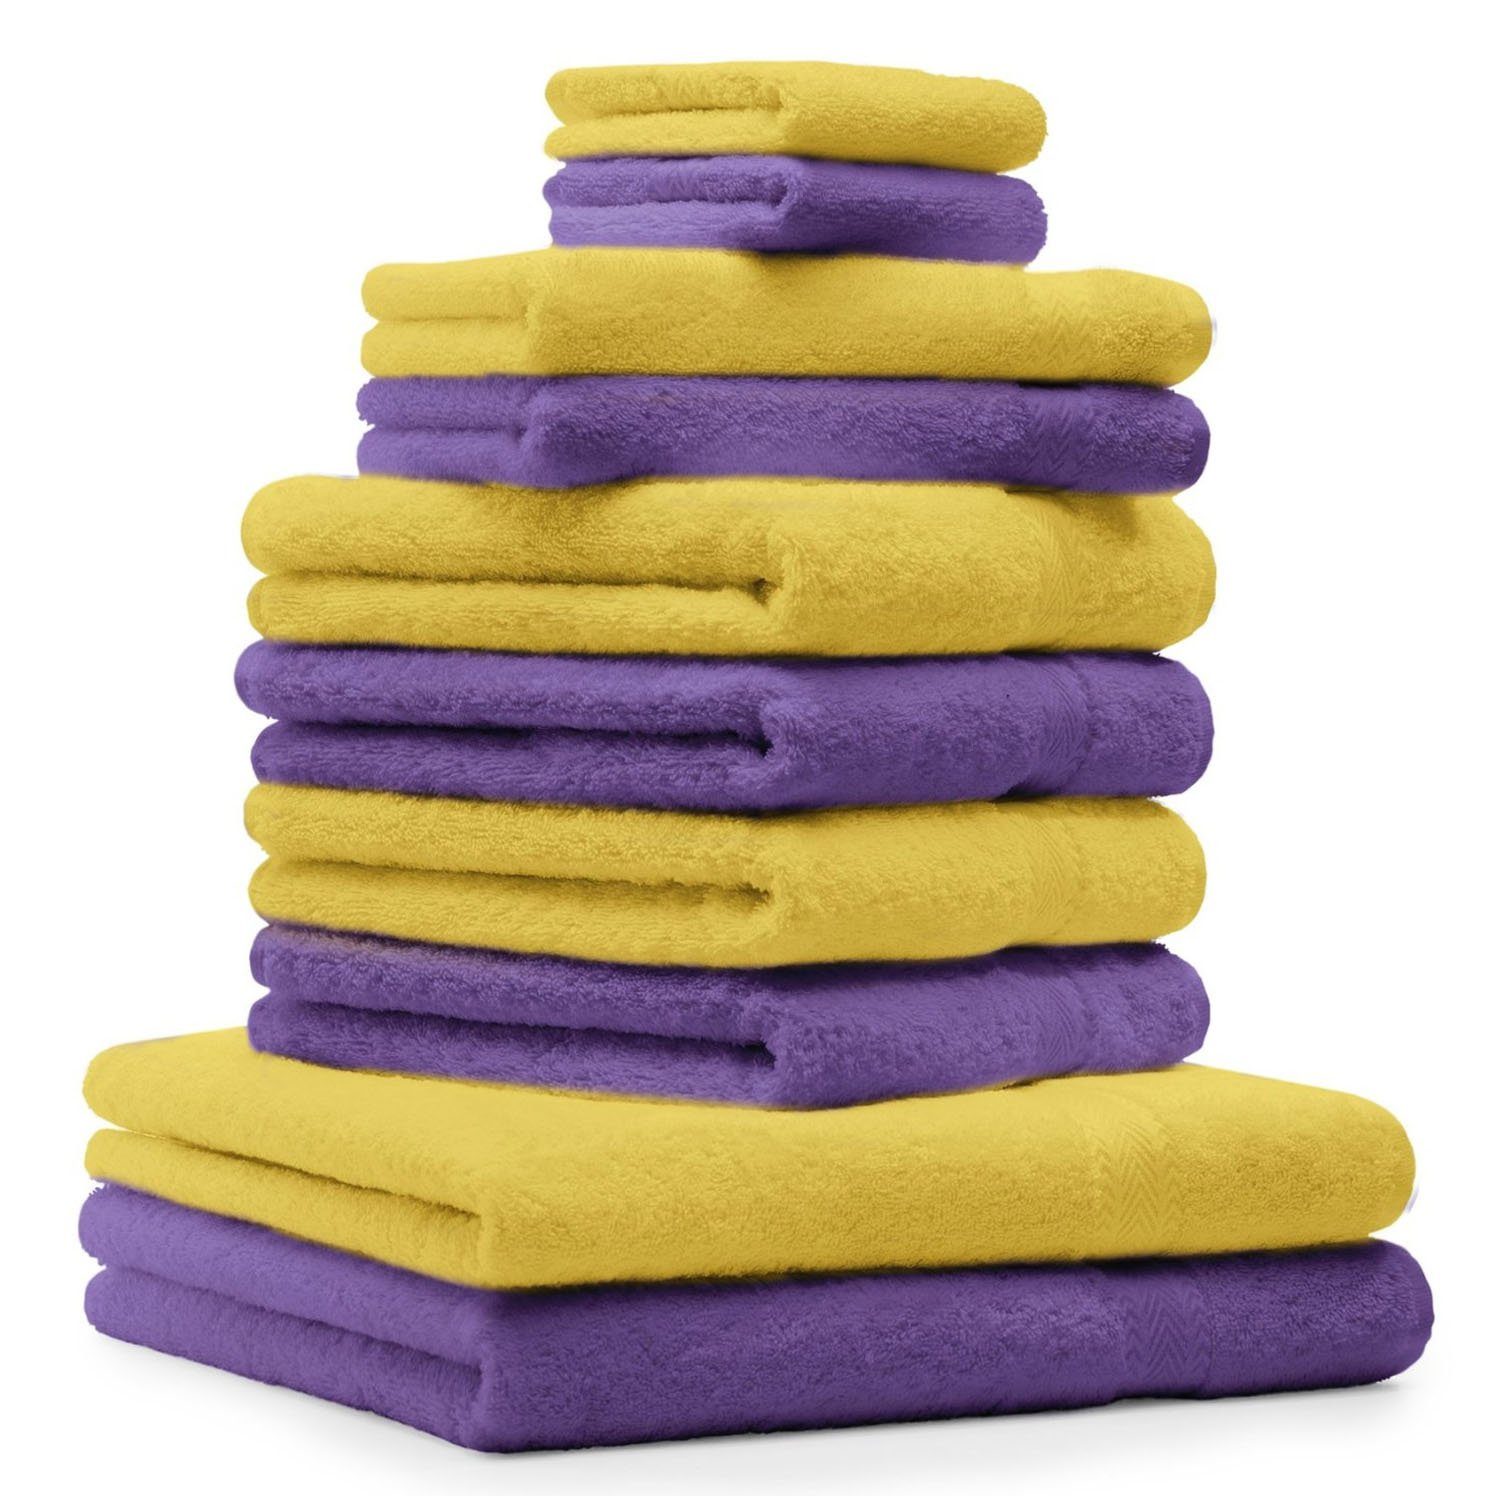 Betz Handtuch Set 10-TLG. Handtuch-Set Classic Farbe lila und gelb, 100% Baumwolle | Handtuch-Sets